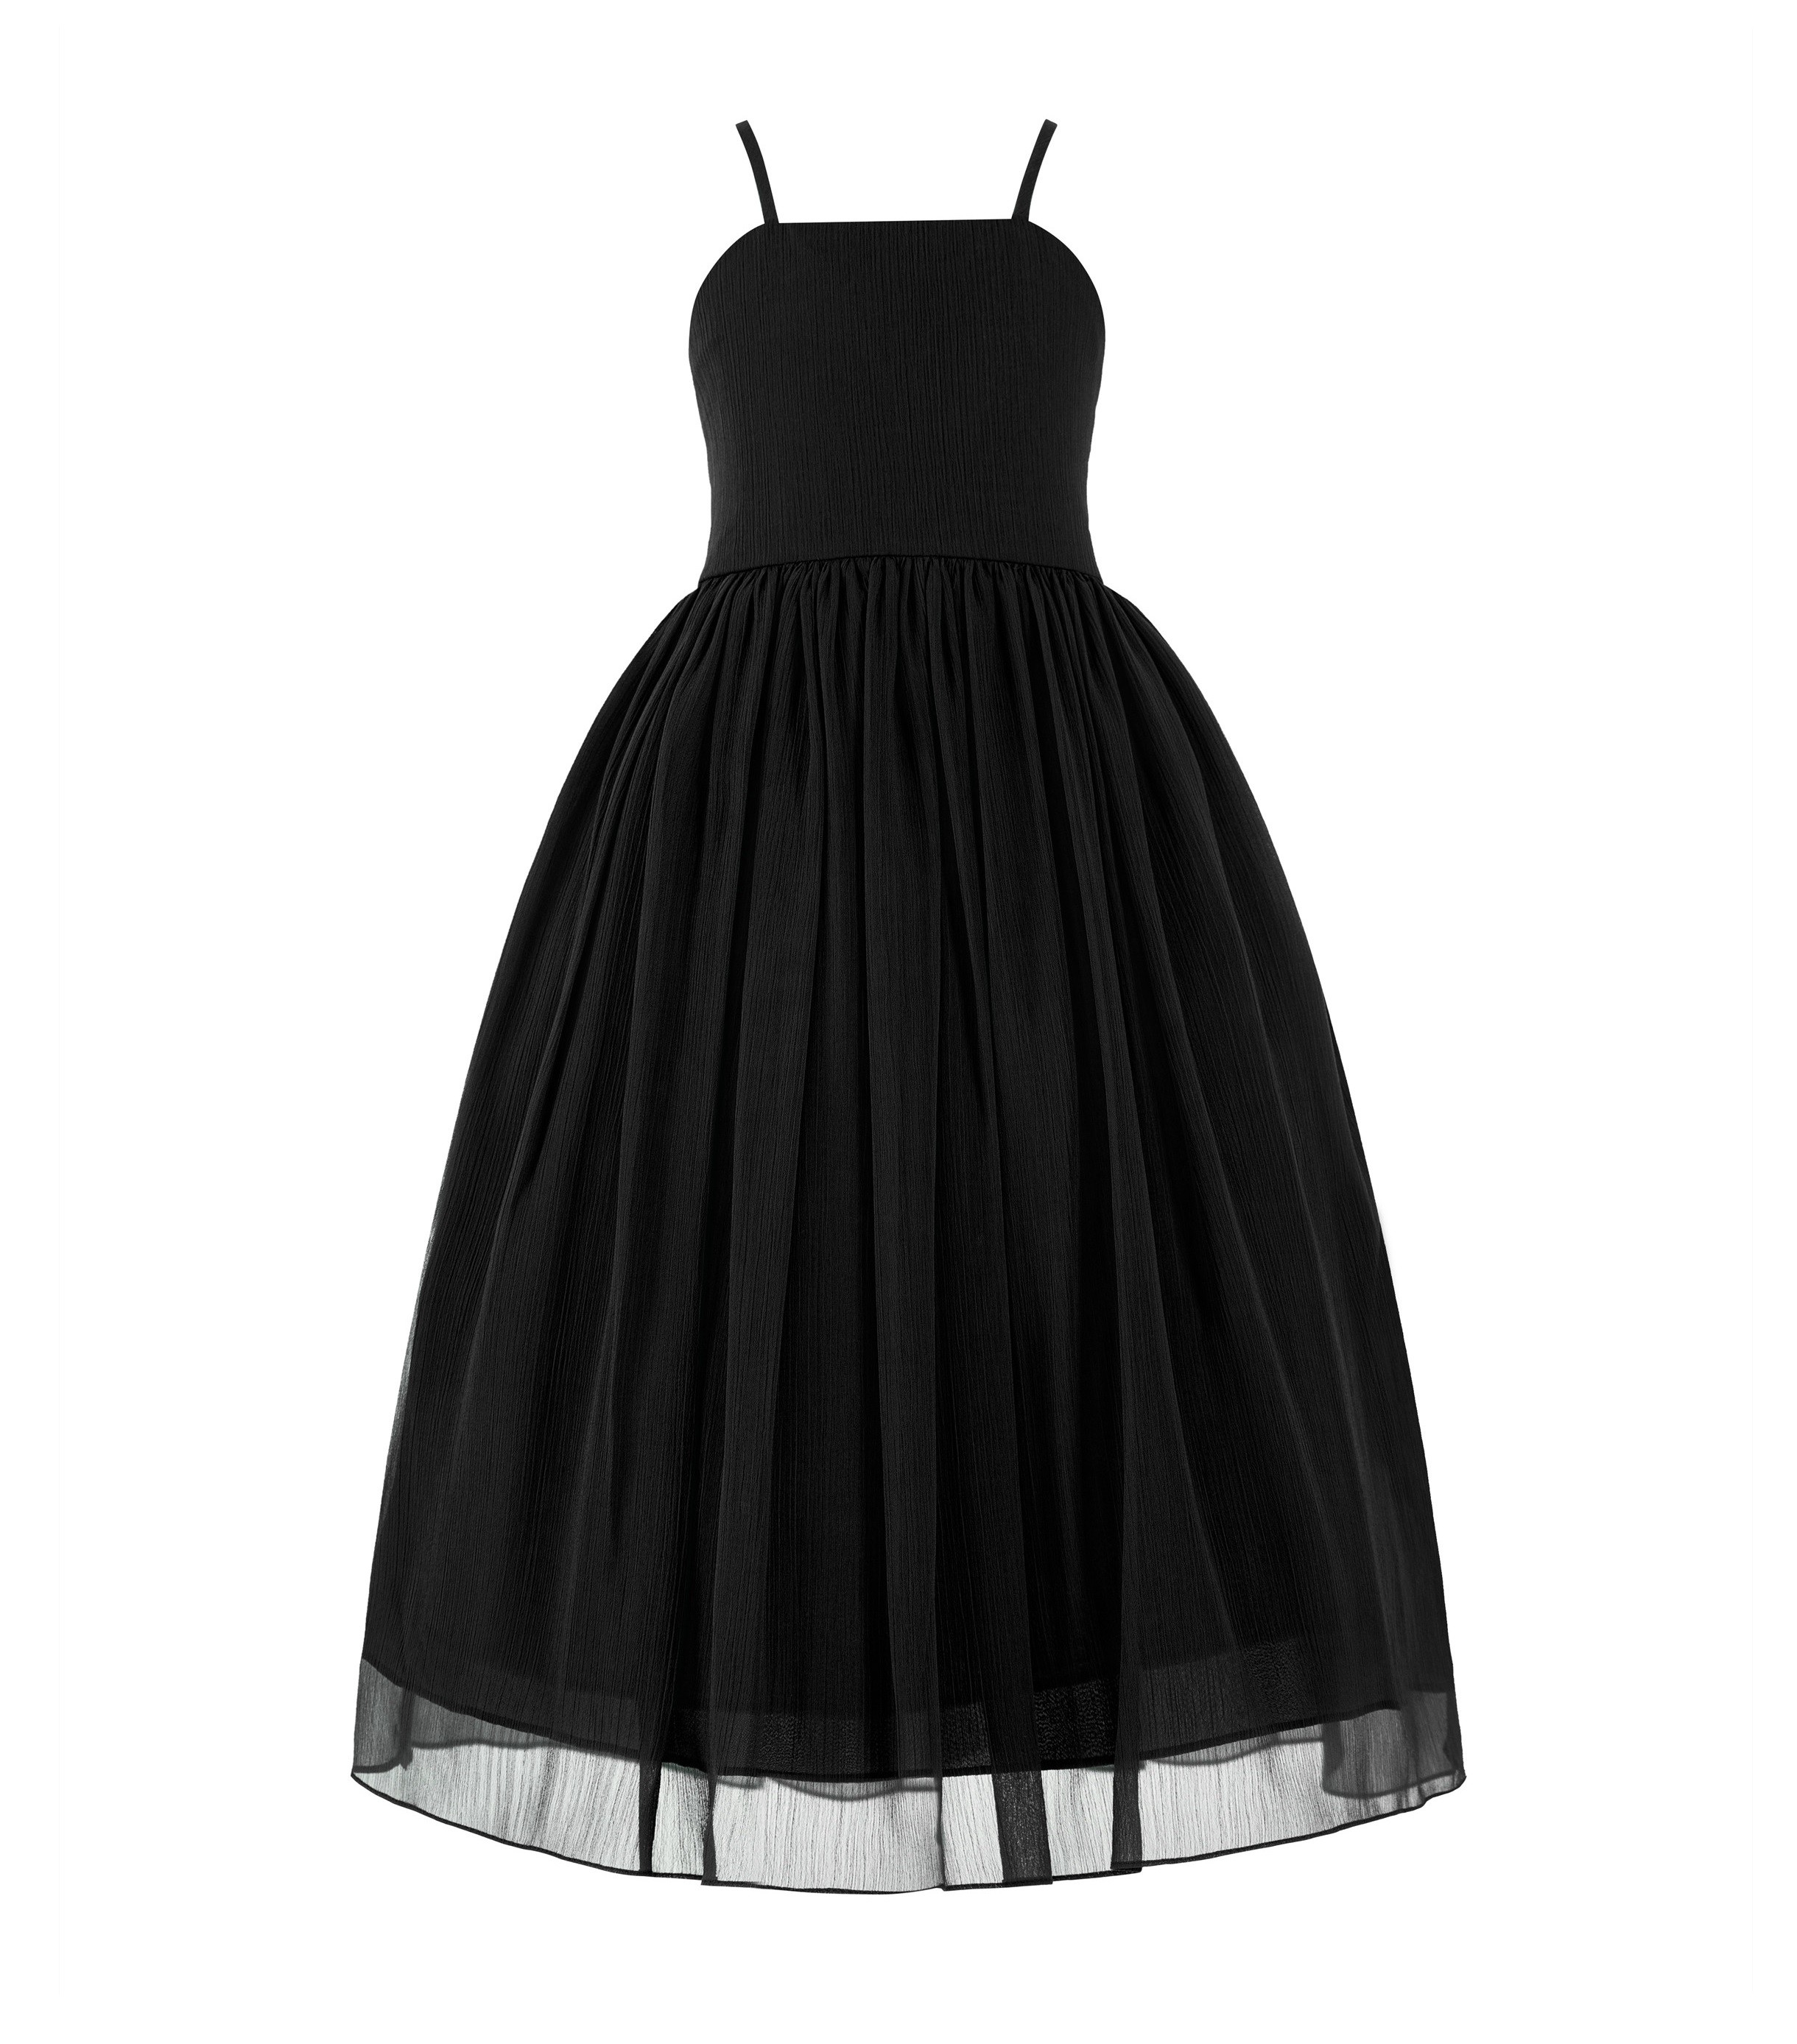 Black Criss Cross Chiffon Flower Girl Dress Summer Dresses 191